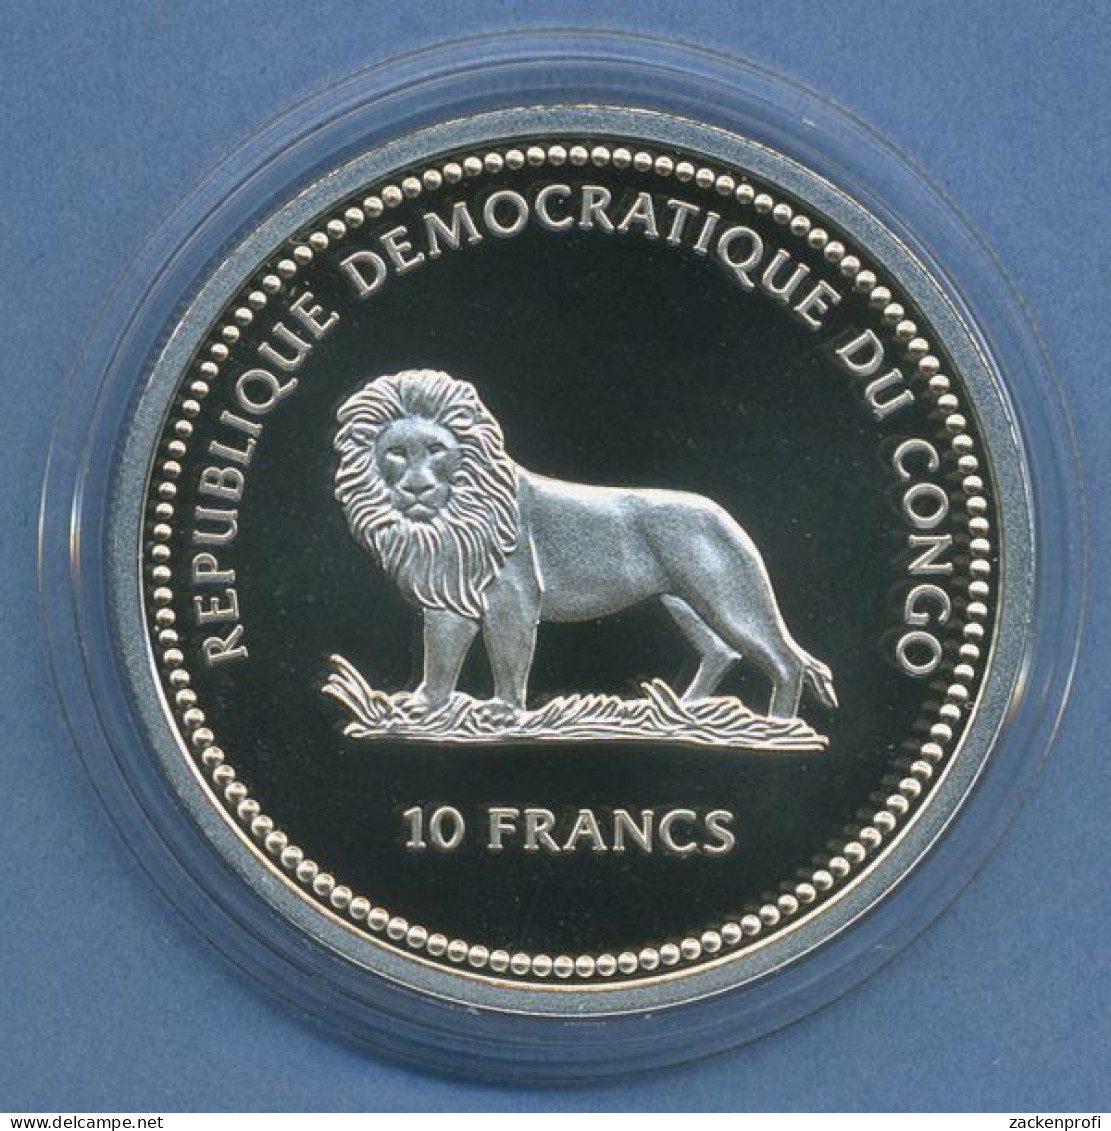 Kongo 10 Franc, 2000 Tierschutz Fische, Silber, Farbig, PP In Kapsel (m4417) - Congo (Democratische Republiek 1998)